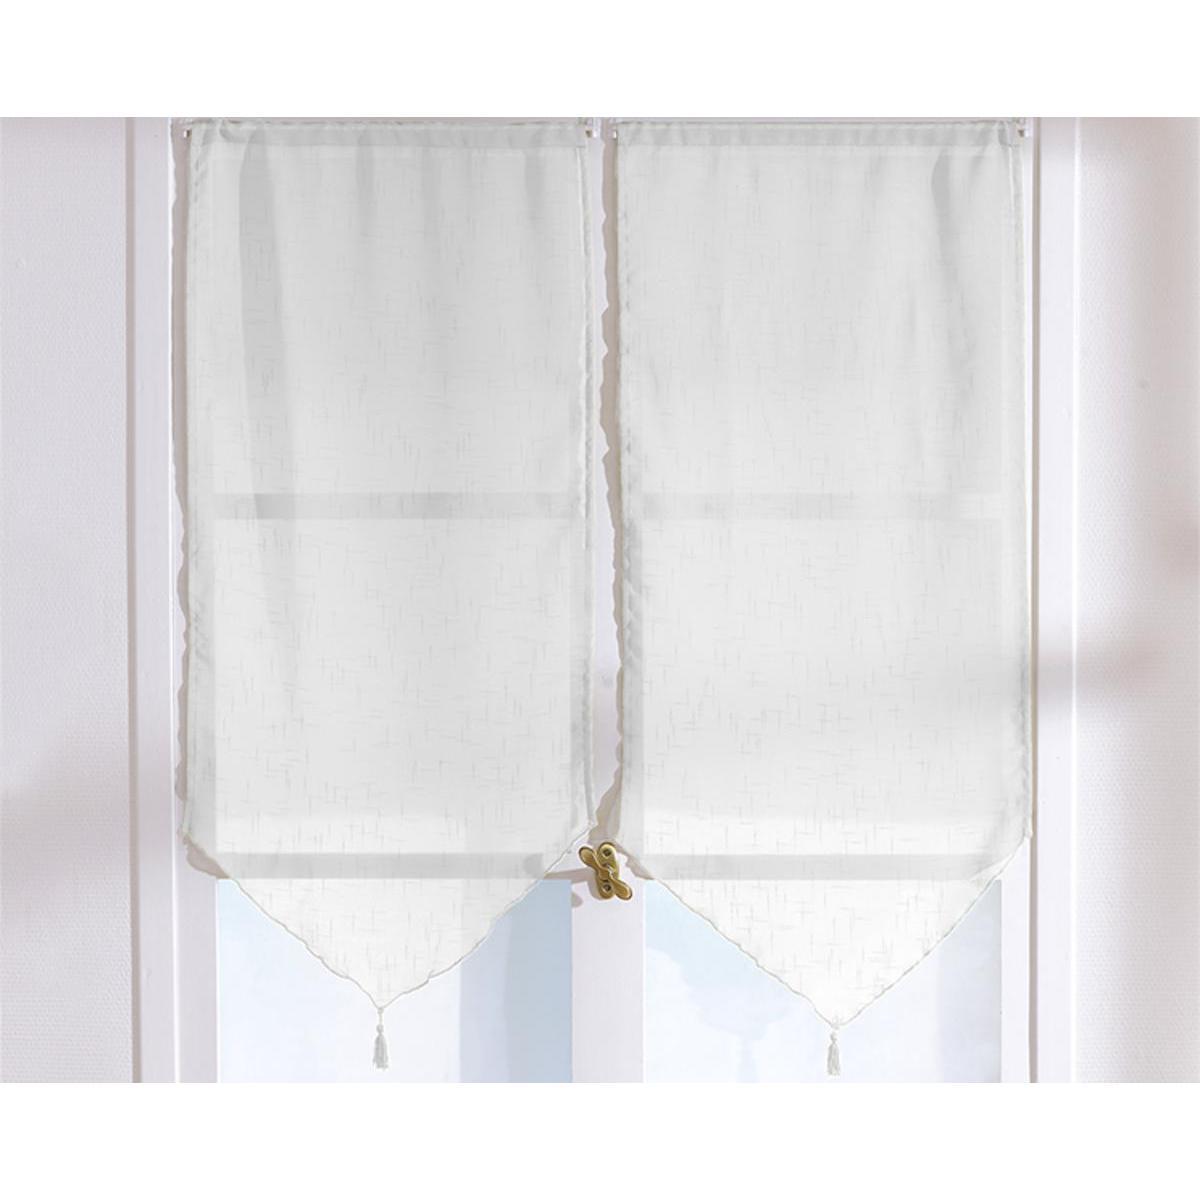 Paire de vitrages - 100% polyester - 60 x 160 cm - Blanc